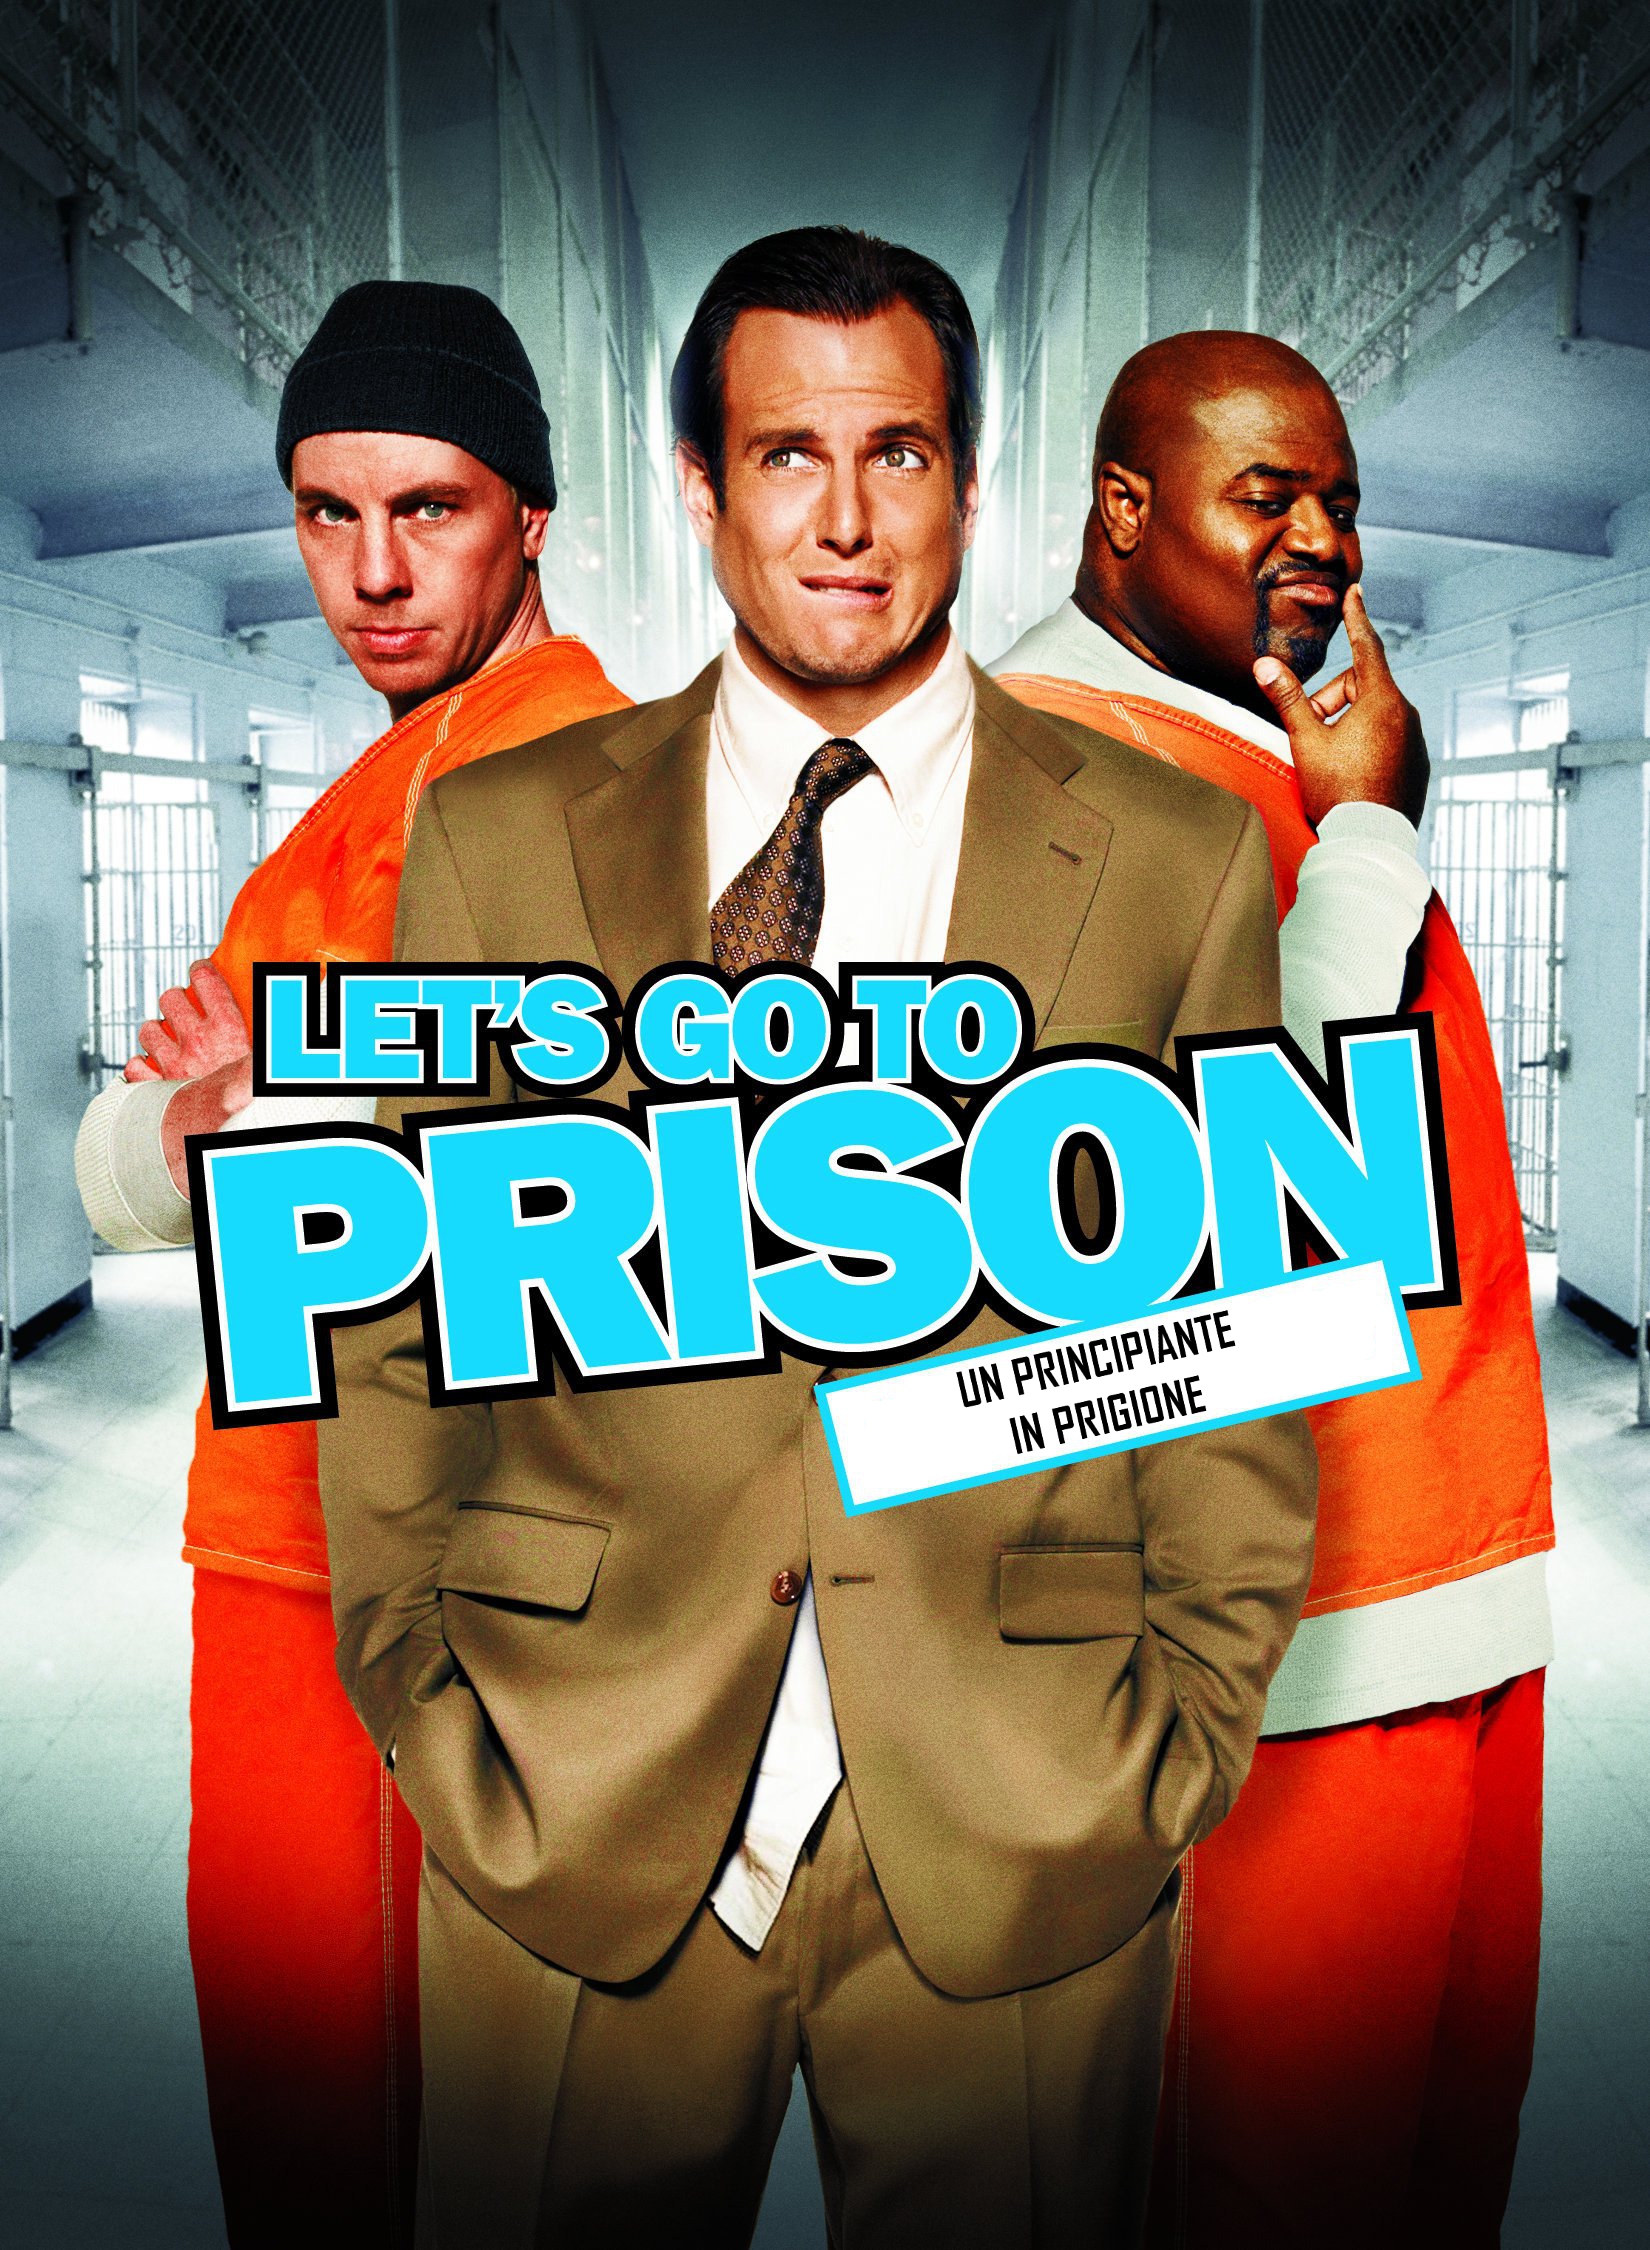 Let’s Go to Prison – Un principiante in prigione (2006)